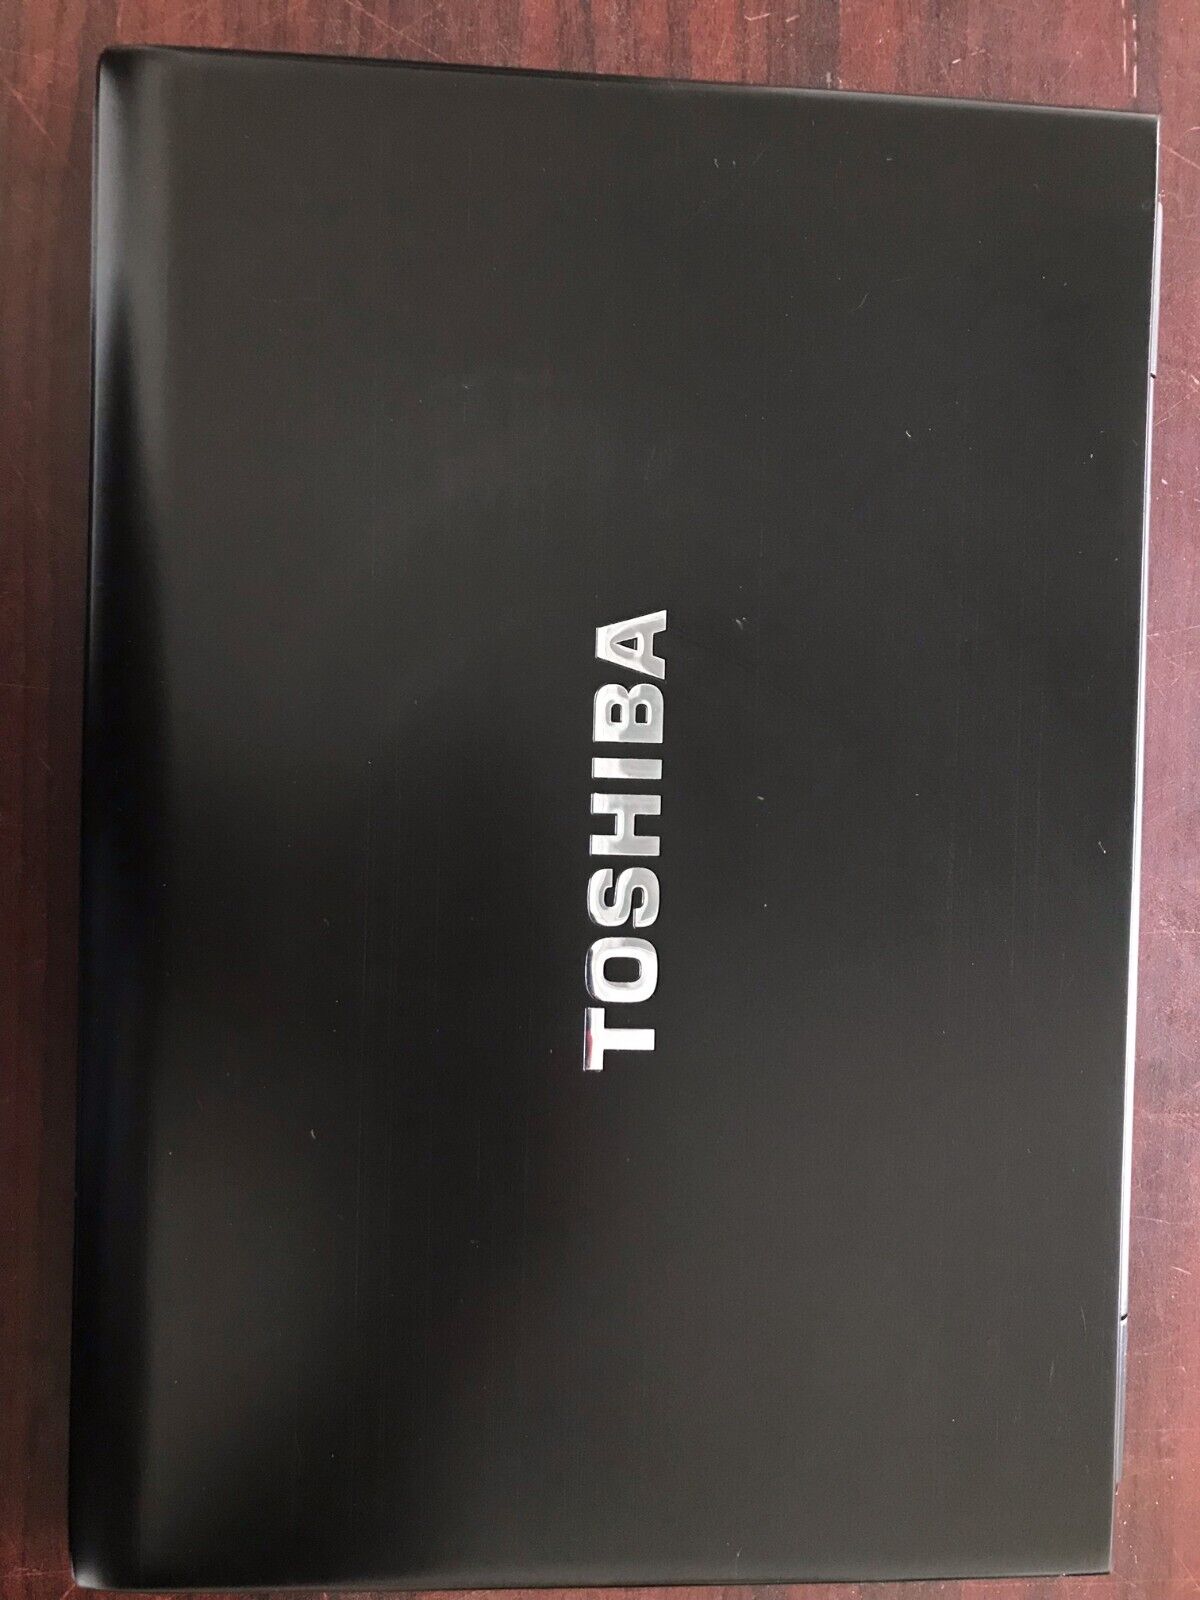 TOSHIBA PORTEGE R930 / I5-3340M / 2.7GHZ / 8GB RAM / NO HDD/ NO CADDY